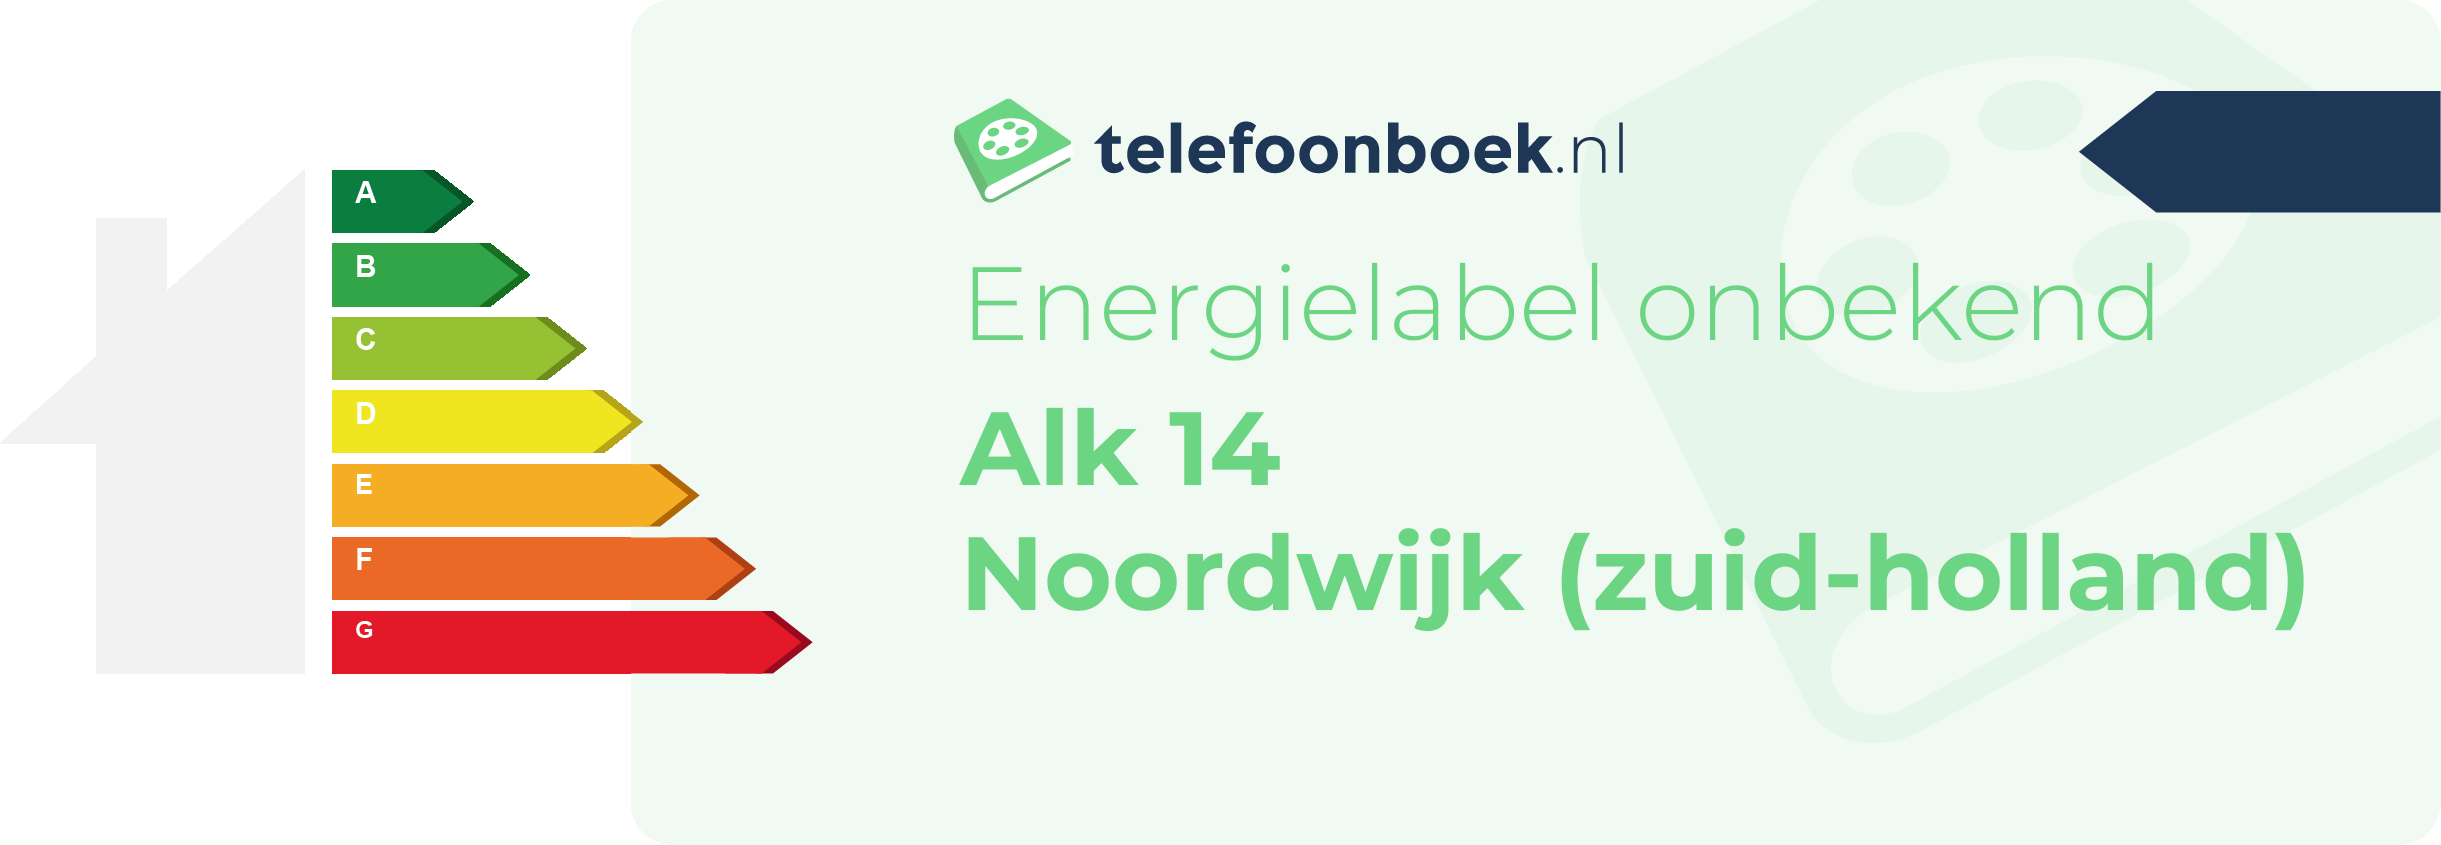 Energielabel Alk 14 Noordwijk (Zuid-Holland)